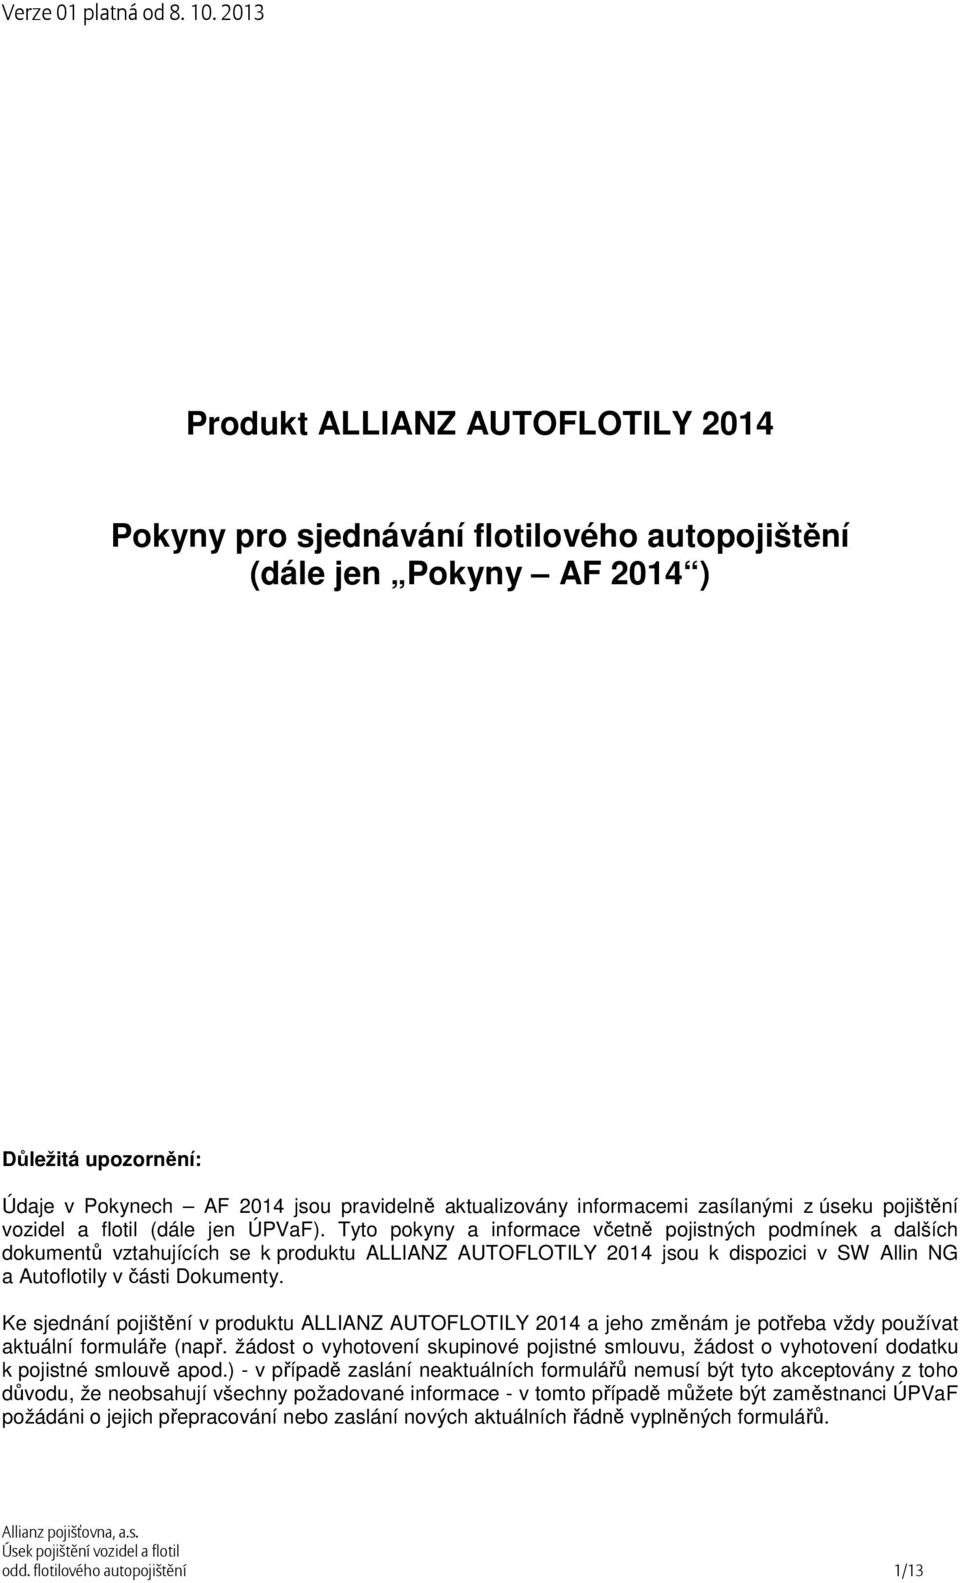 Tyto pokyny a informace včetně pojistných podmínek a dalších dokumentů vztahujících se k produktu ALLIANZ AUTOFLOTILY 2014 jsou k dispozici v SW Allin NG a Autoflotily v části Dokumenty.